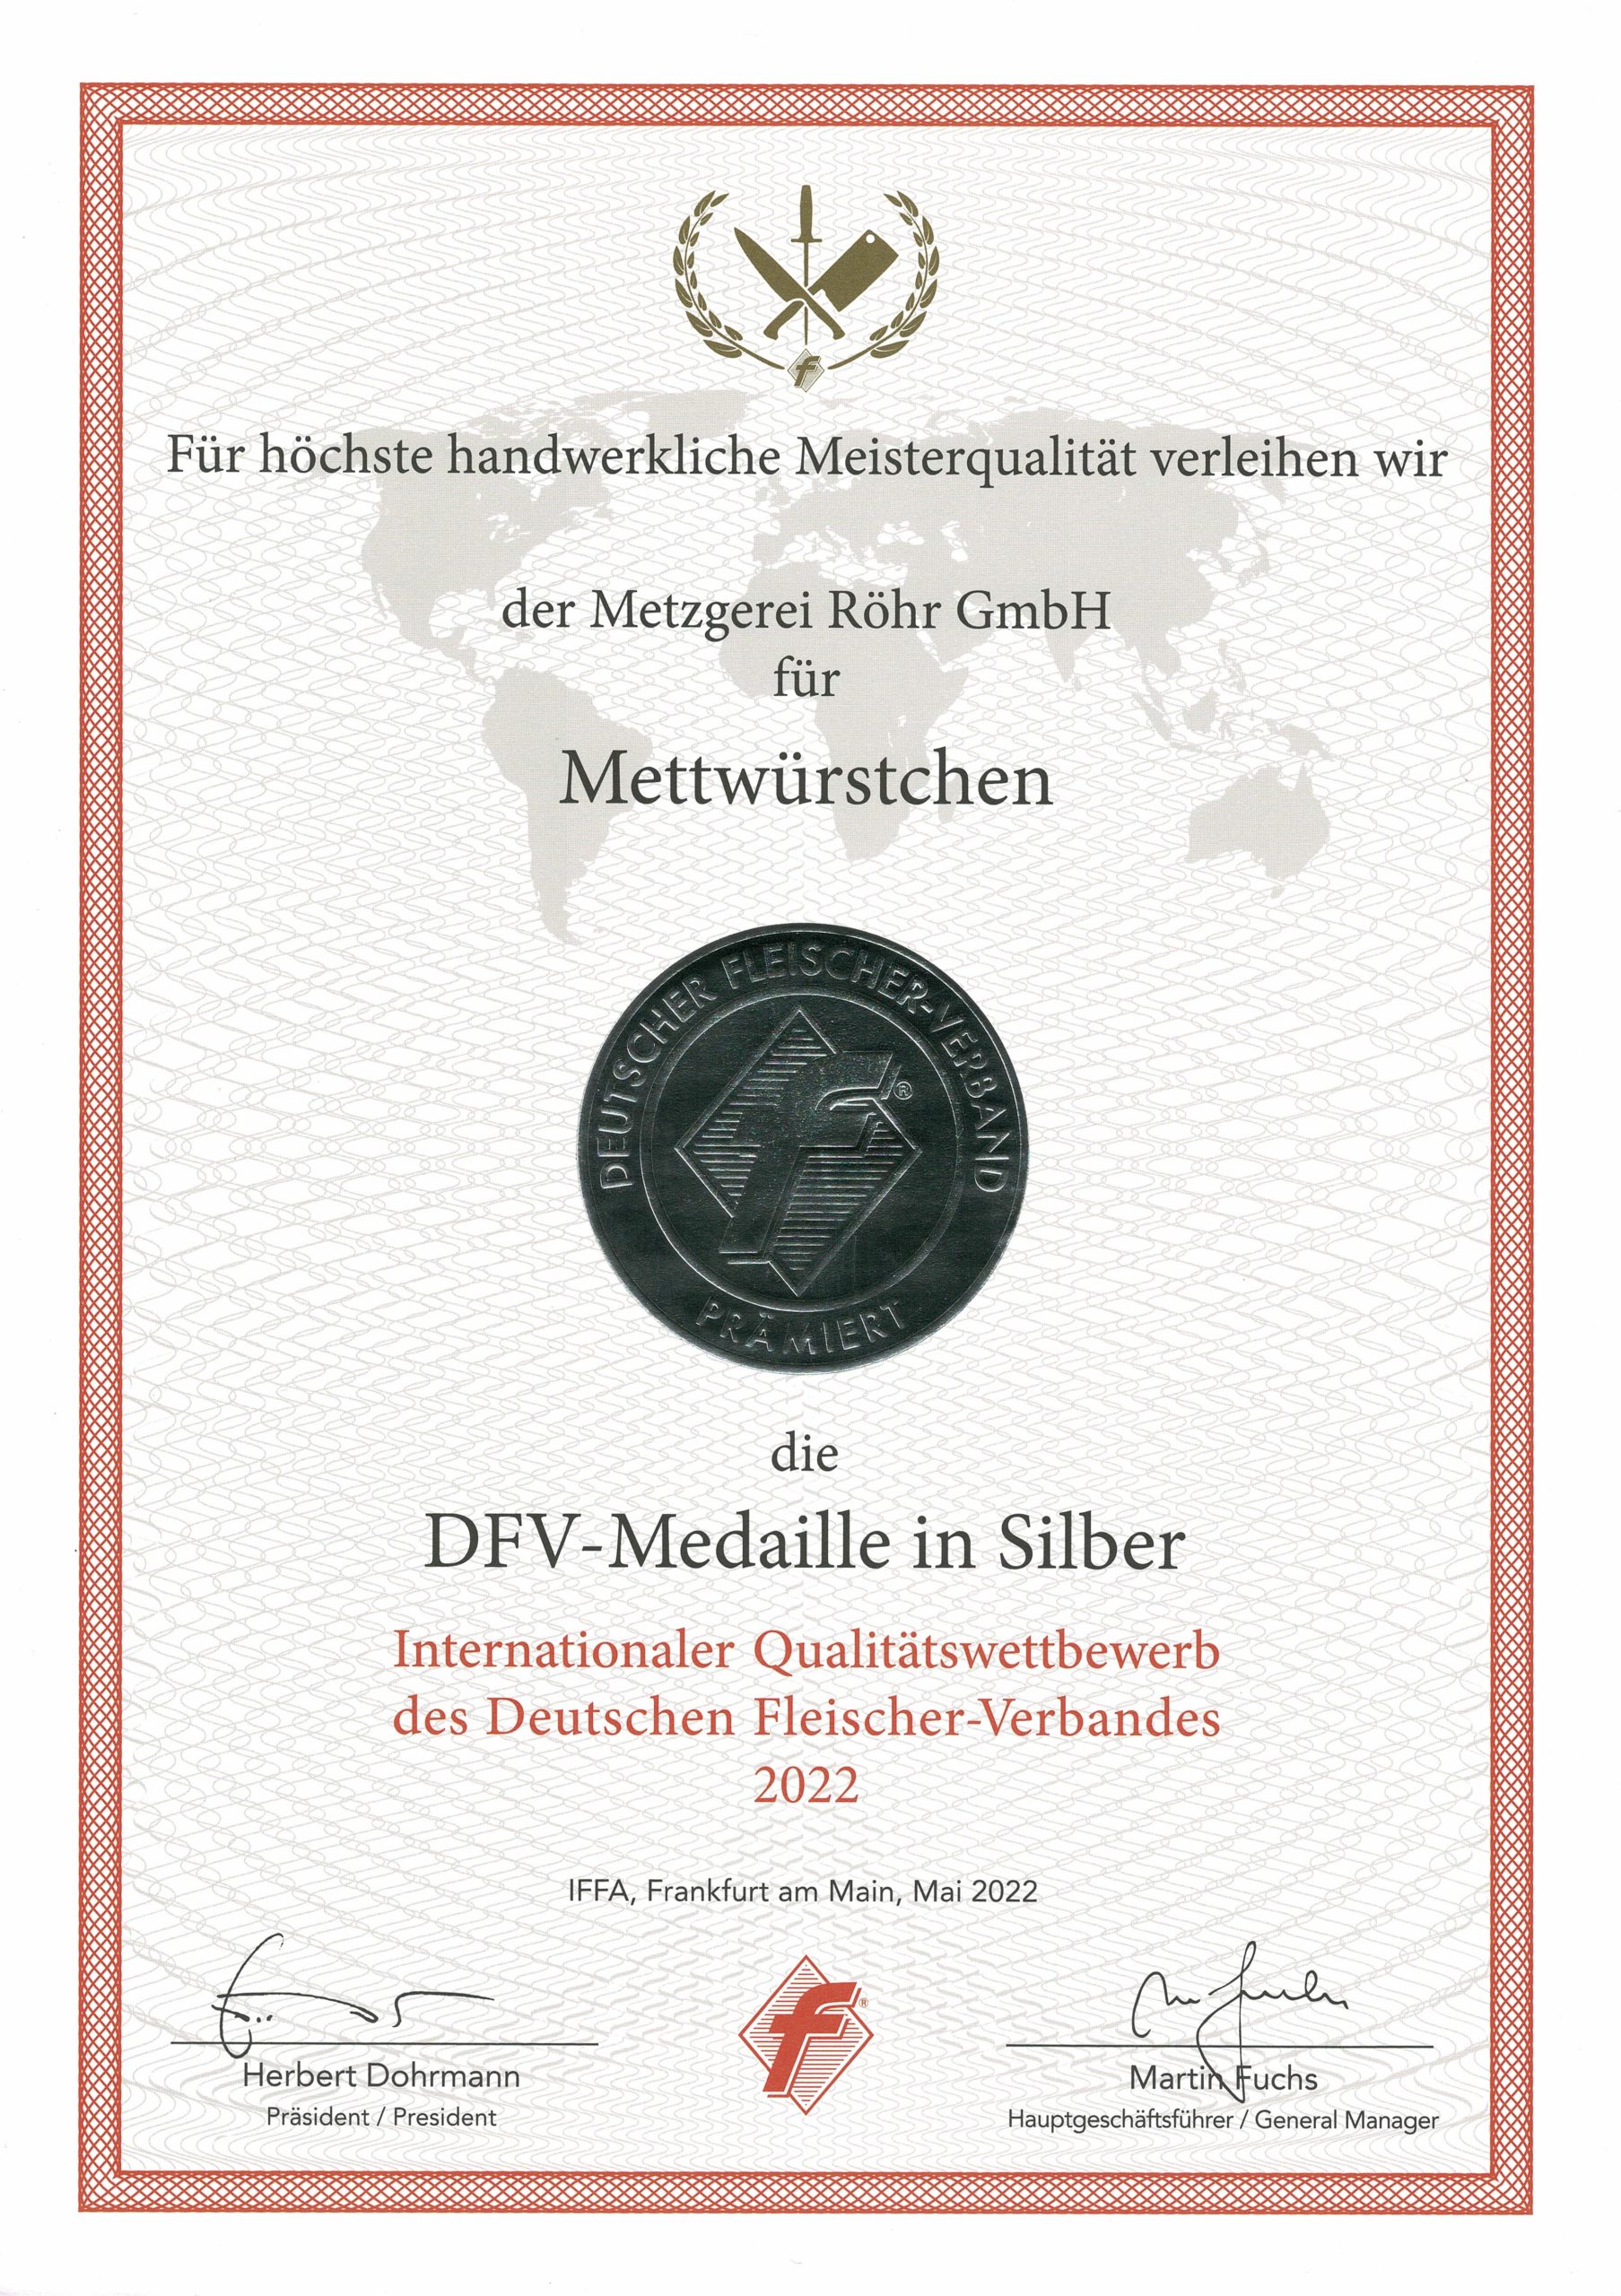 DFV-Medaille in Silber für Mettwürstchen